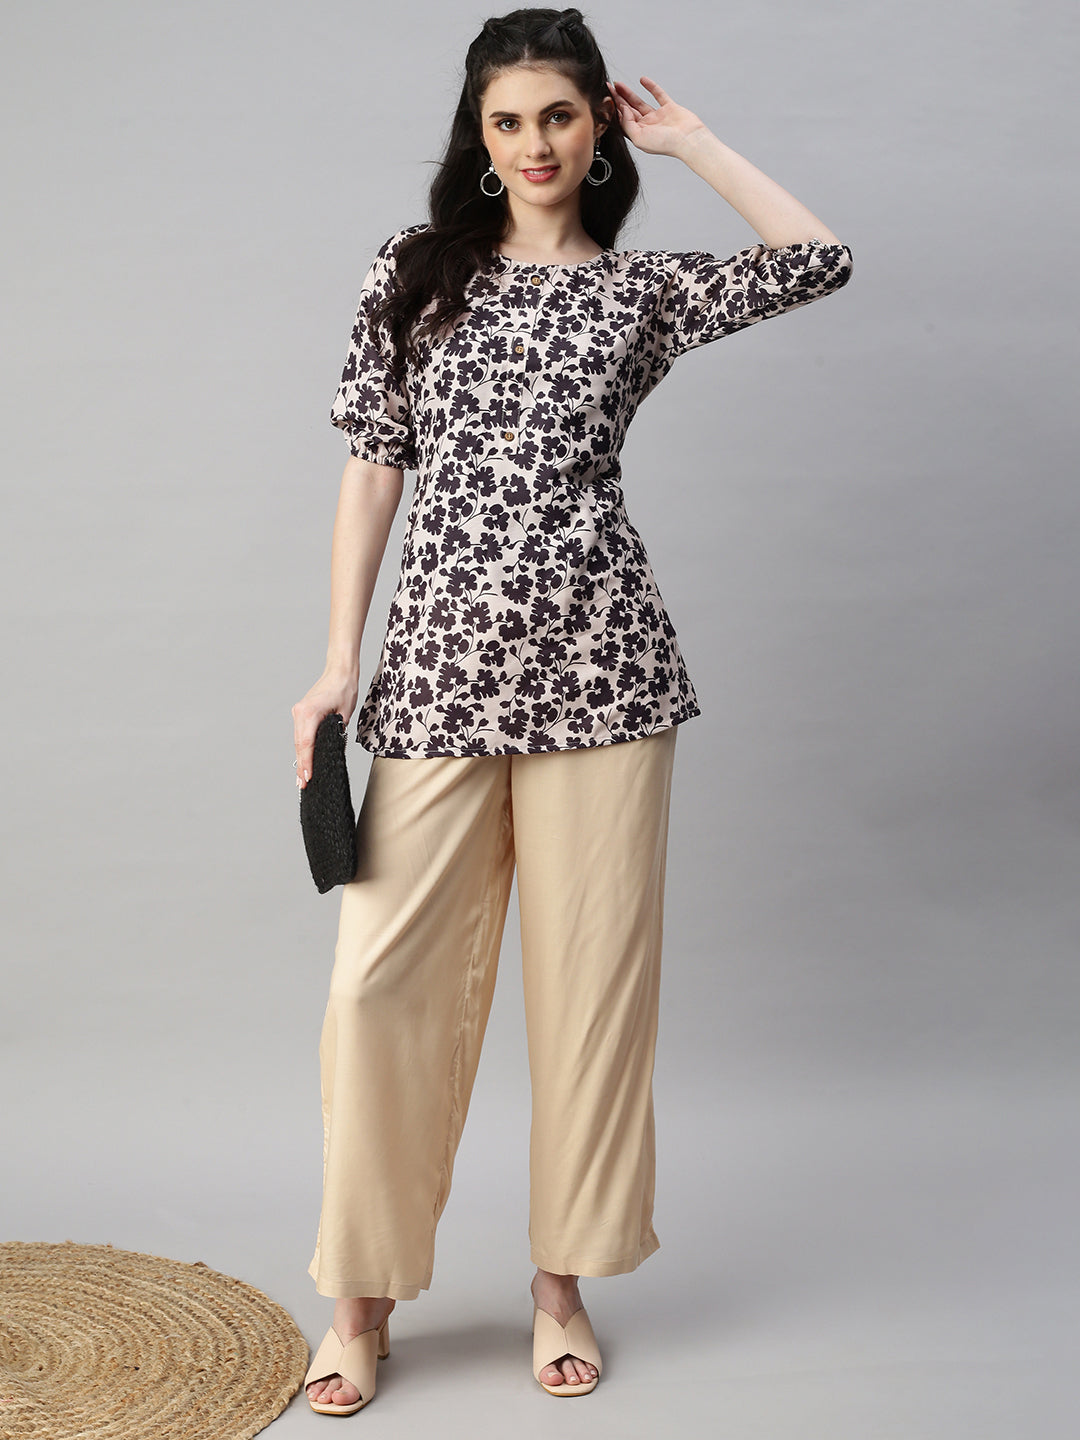 Kurti Women Indian New Design Kurtis Cotton Top Short Kurtis Kurta Tunic  Blouse Plus Size Pant Palazzo Set Saree Punjabi Suit Readymade UD29NKSC |  Lazada